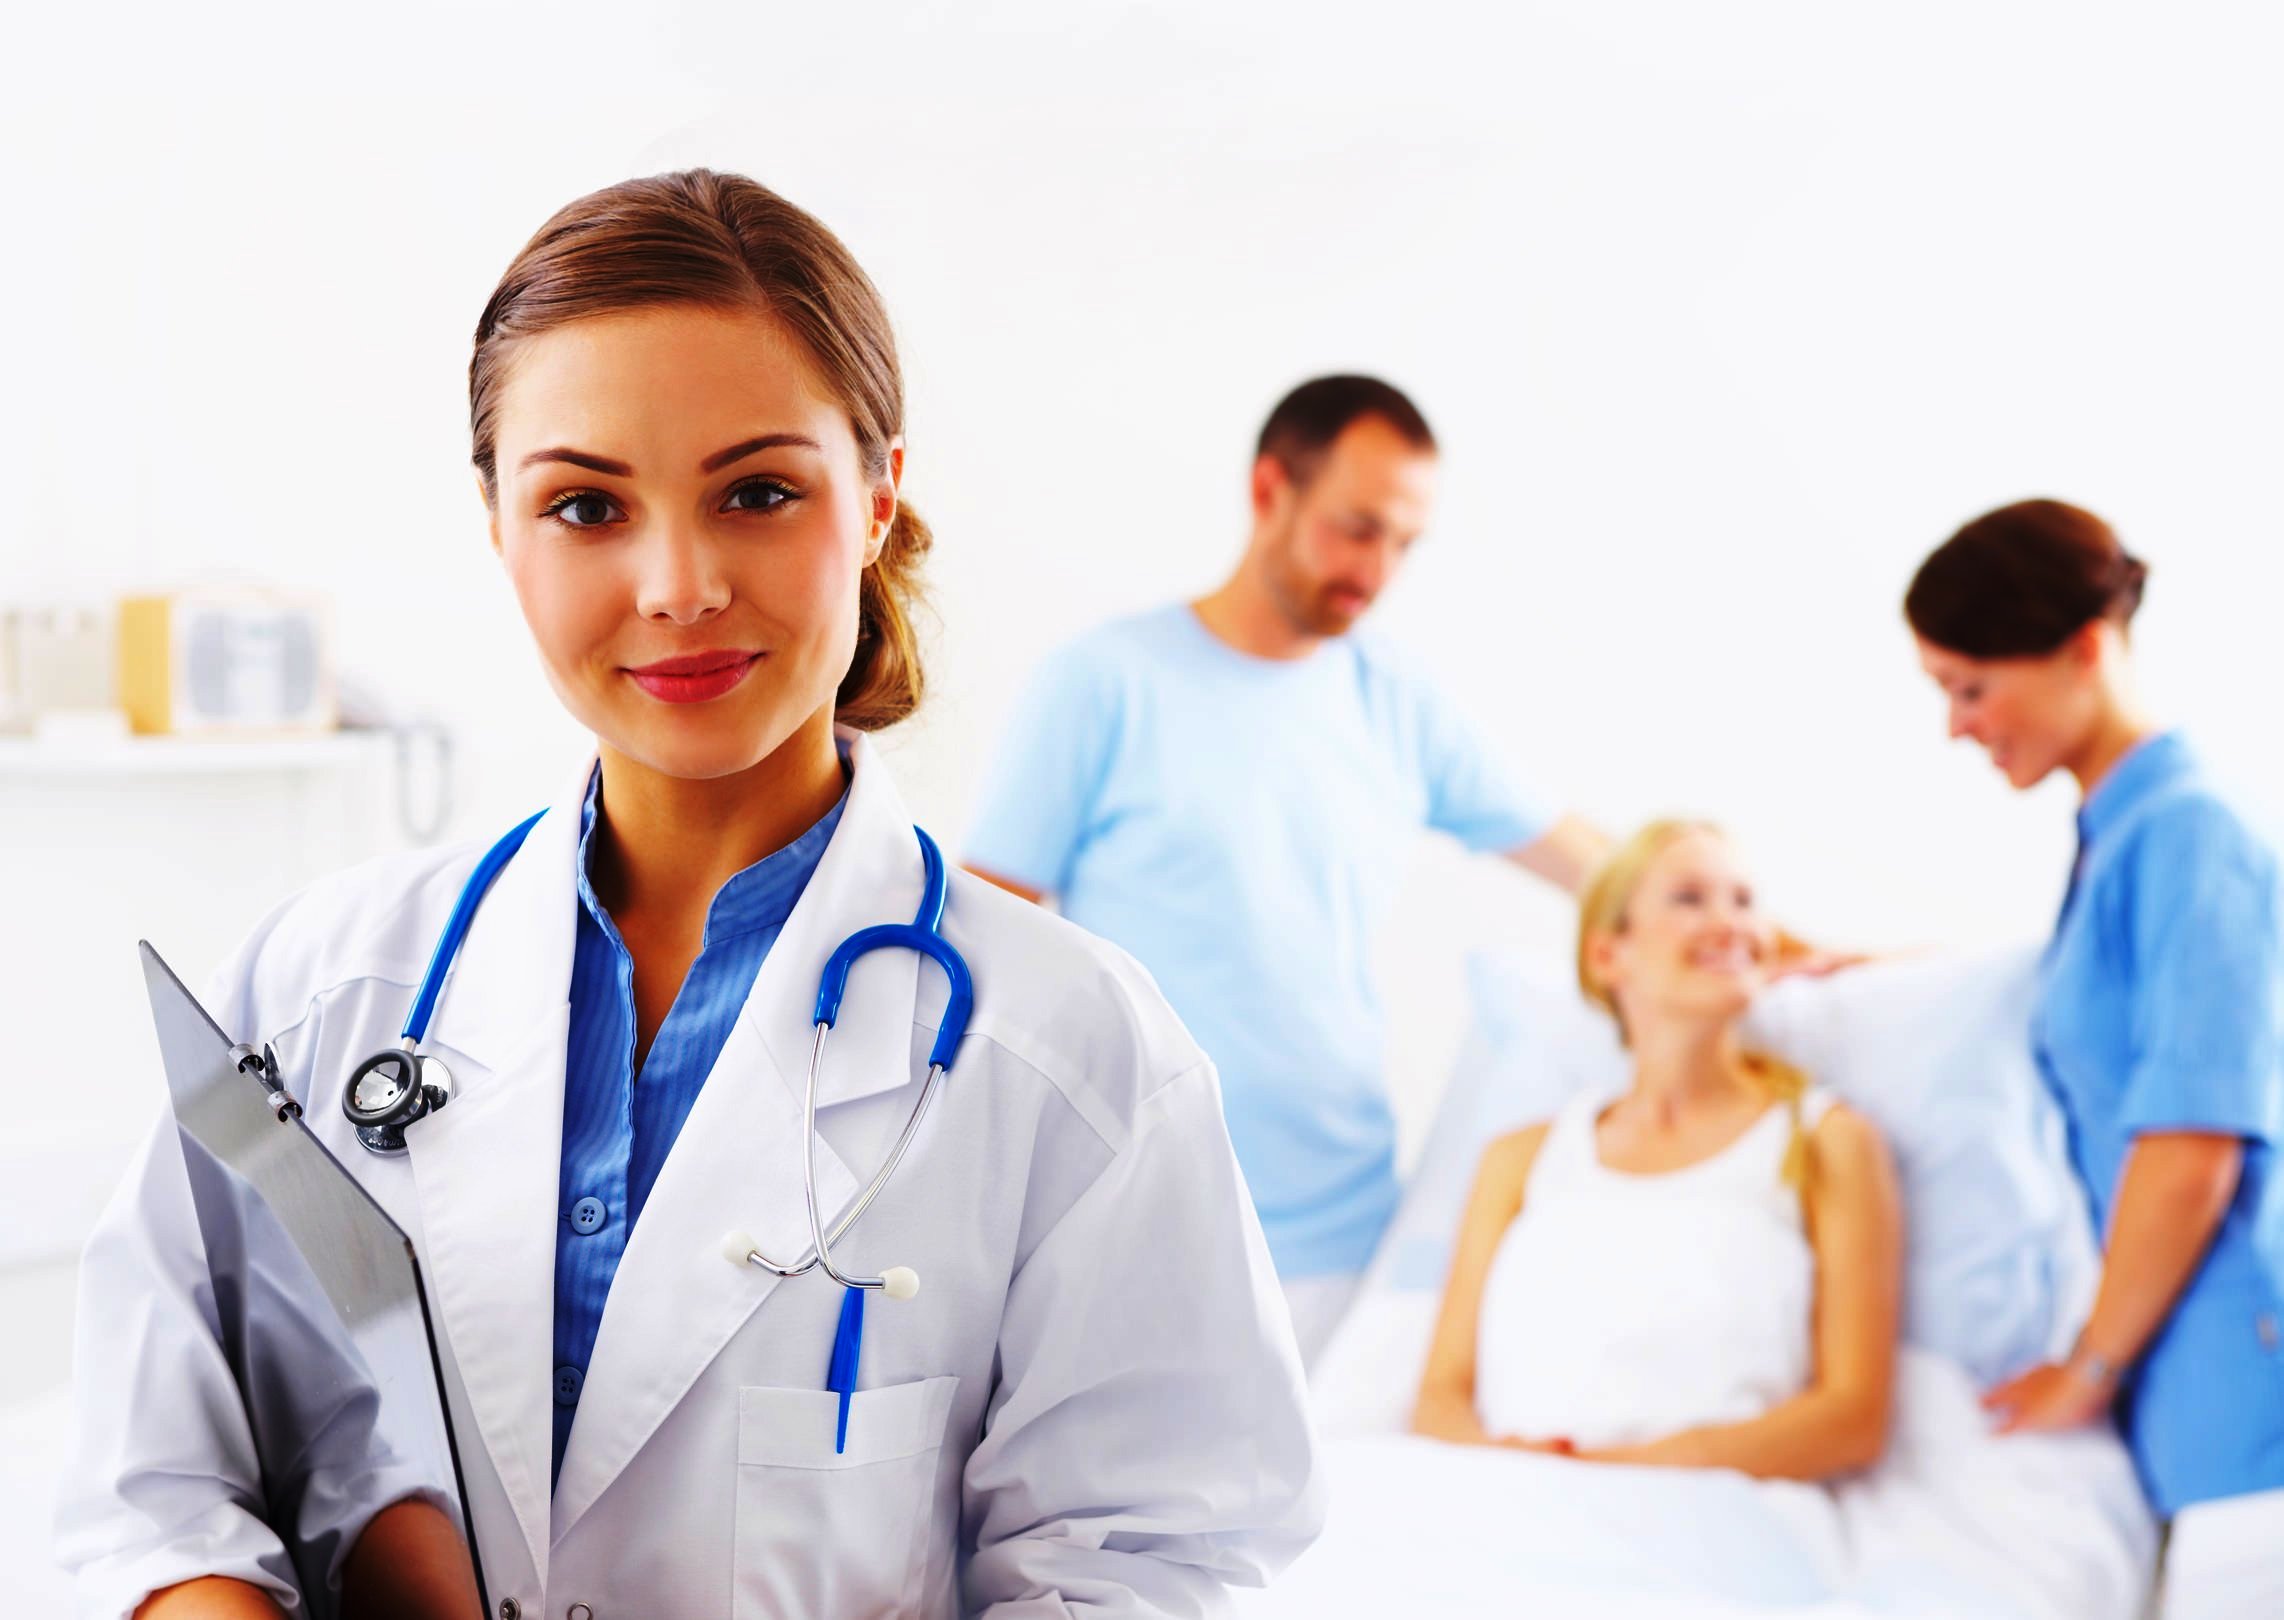  Поиск квалифицированного врача-акушера и клиники в Анталии для ведения беременности 